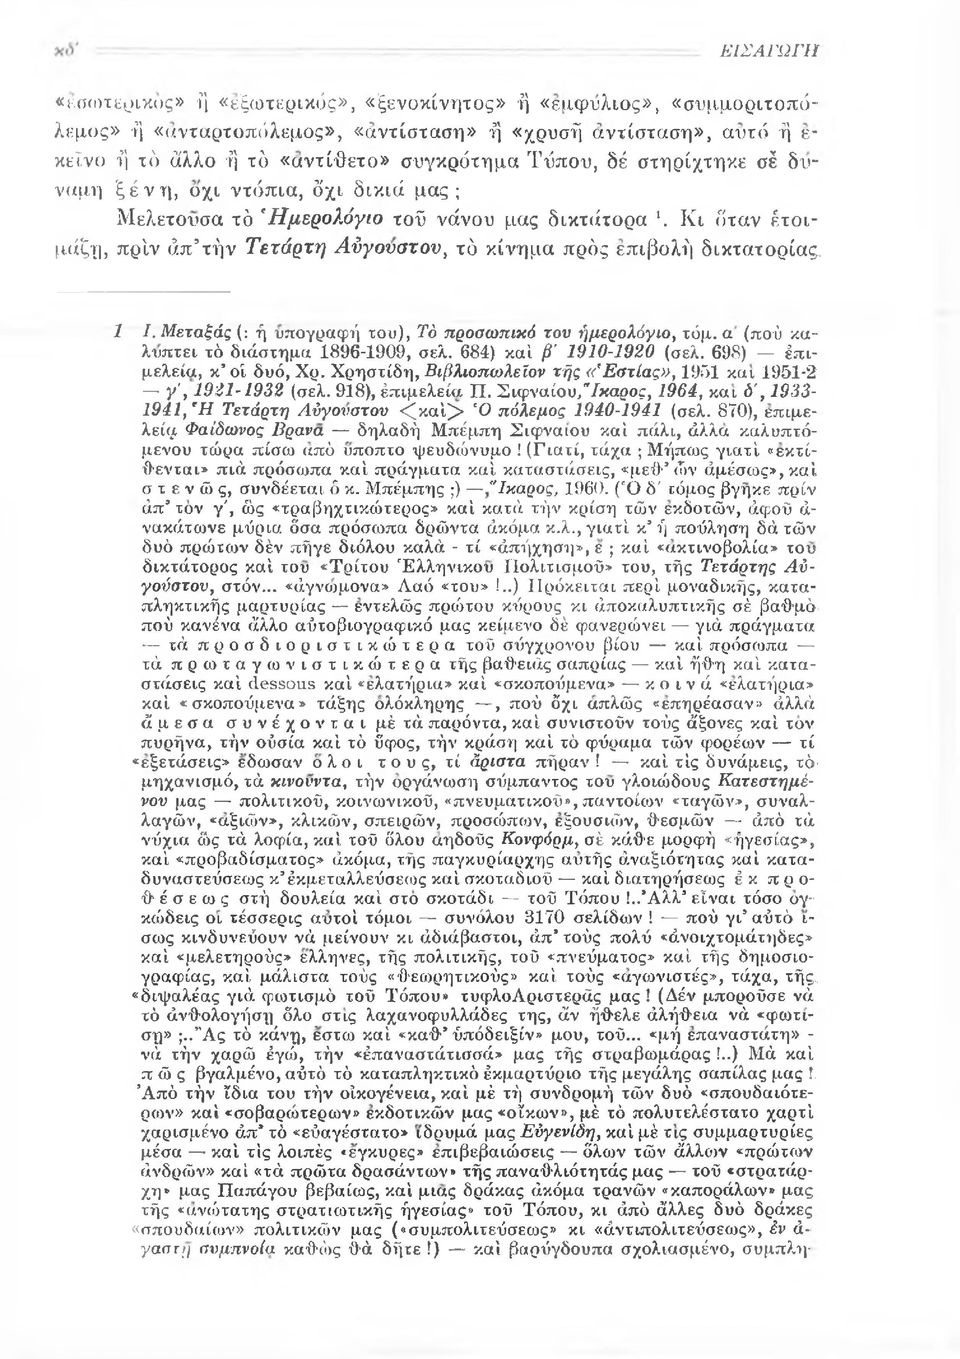 Μεταξάς (: ή υπογραφή του), Τό προσωπικό του ήμερολόγιο, τόμ. α (πού καλύπτει τό διάστημα 1896-1909, σελ. 684) καί β' 1910-1920 (σελ. 698) έπιμελεία, κ*οί δυό, Χρ.